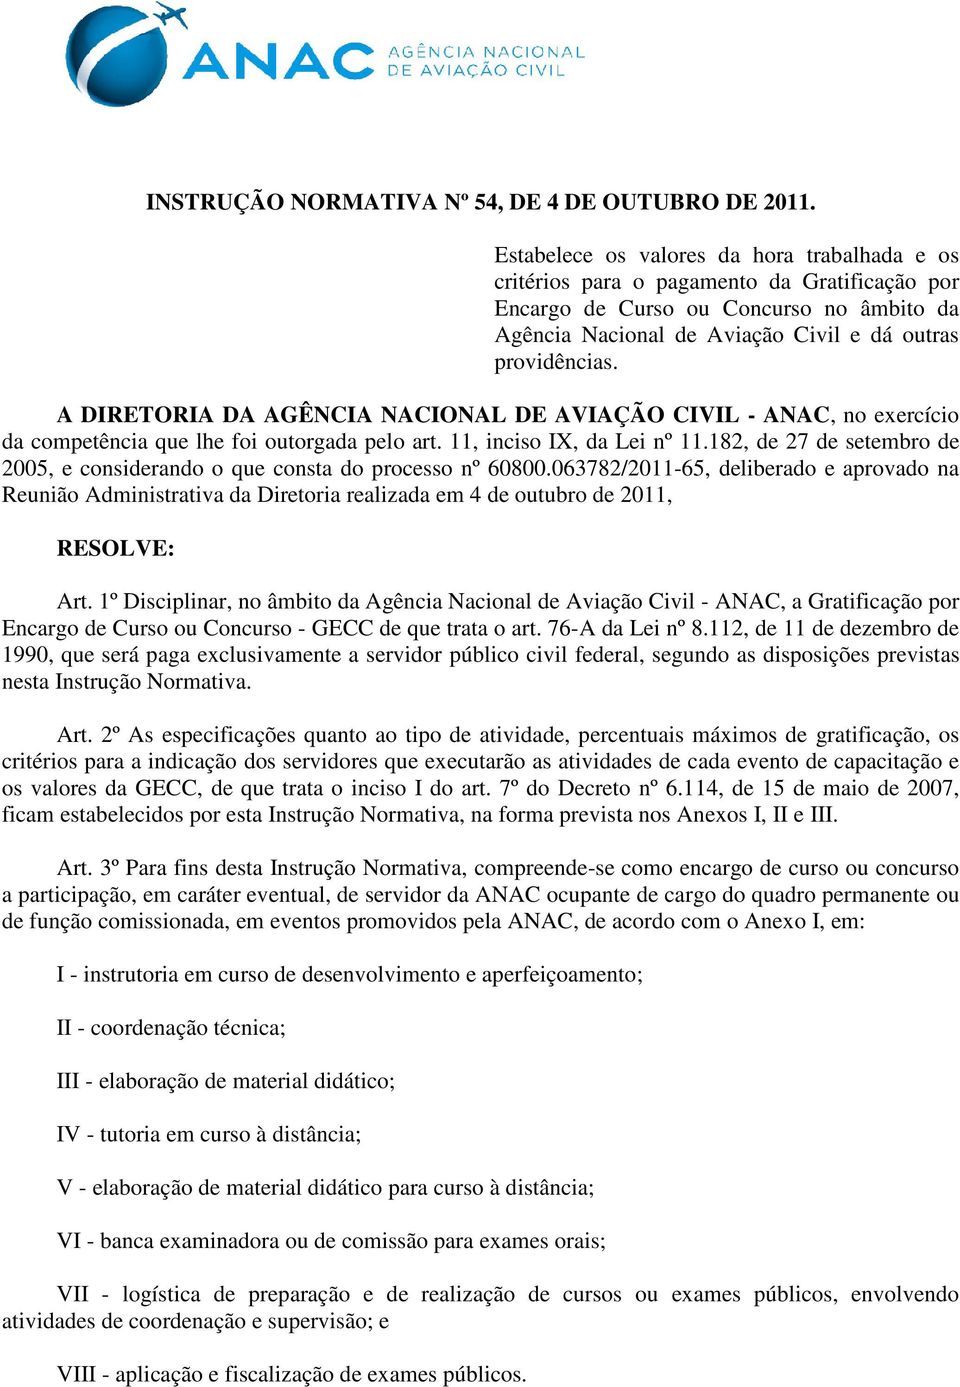 A DIRETORIA DA AGÊNCIA NACIONAL DE AVIAÇÃO CIVIL - ANAC, no exercício da competência que lhe foi outorgada pelo art. 11, inciso IX, da Lei nº 11.